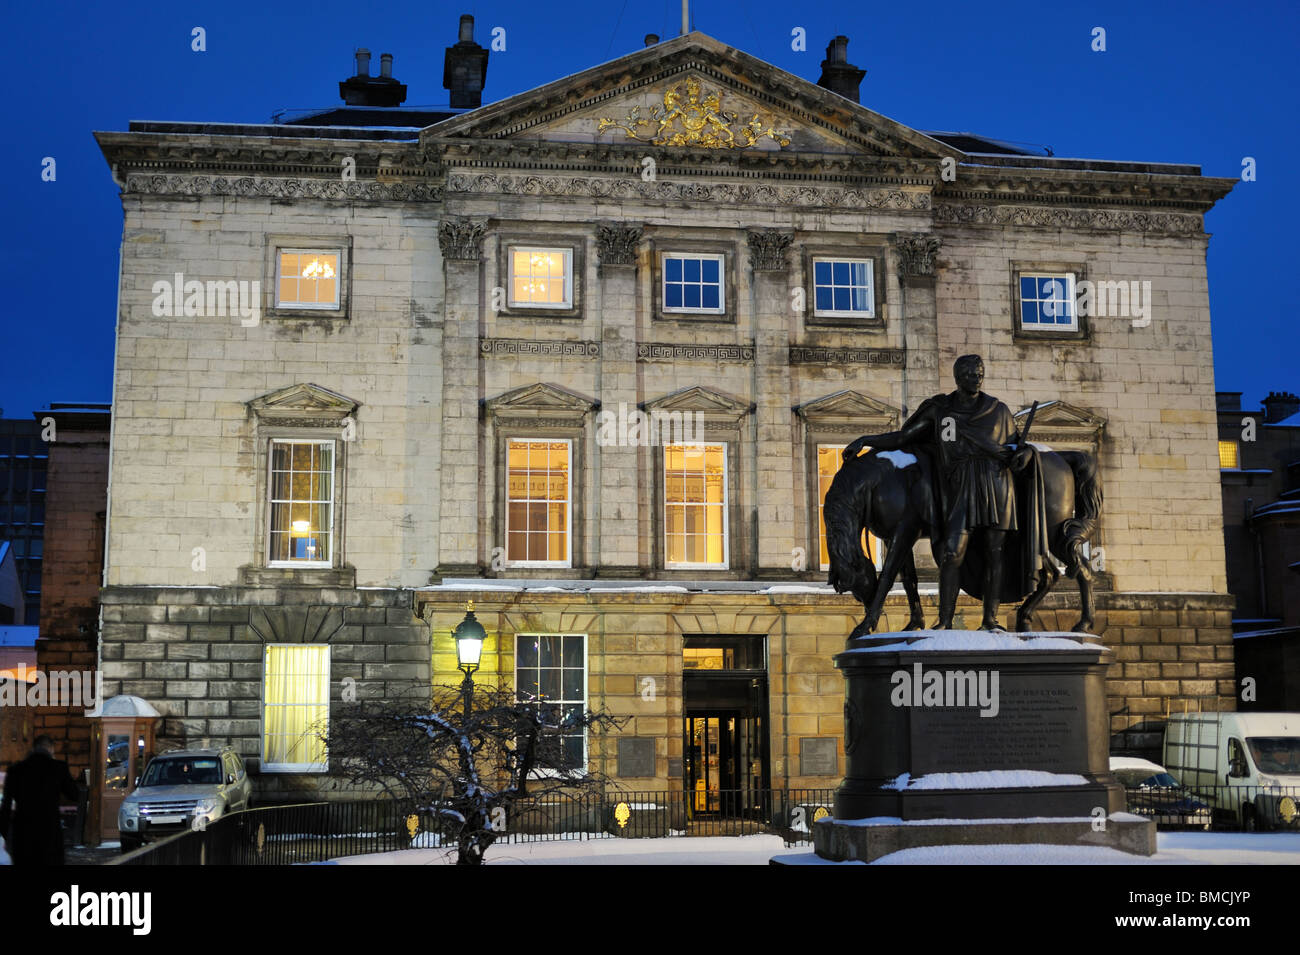 Dundas House, ancien quartier général de la Royal Bank of Scotland, Édimbourg, Écosse, Royaume-Uni, au crépuscule, en hiver Banque D'Images